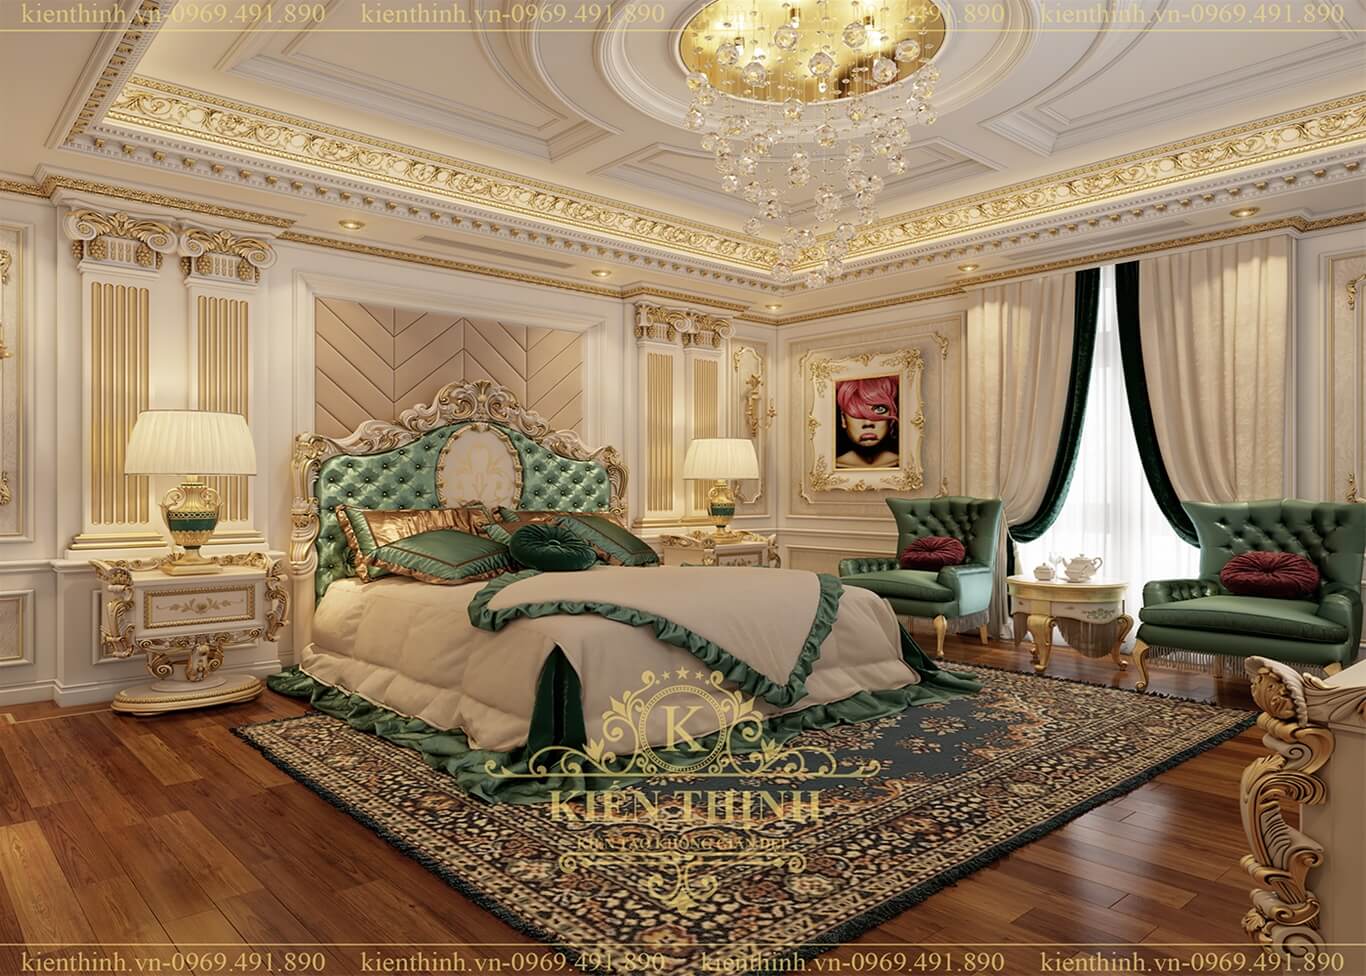 thiết kế nội thất phòng ngủ biệt thự lâu đài phong cách tân cổ điển châu Âu sang trọng ở Đồng Nai 03